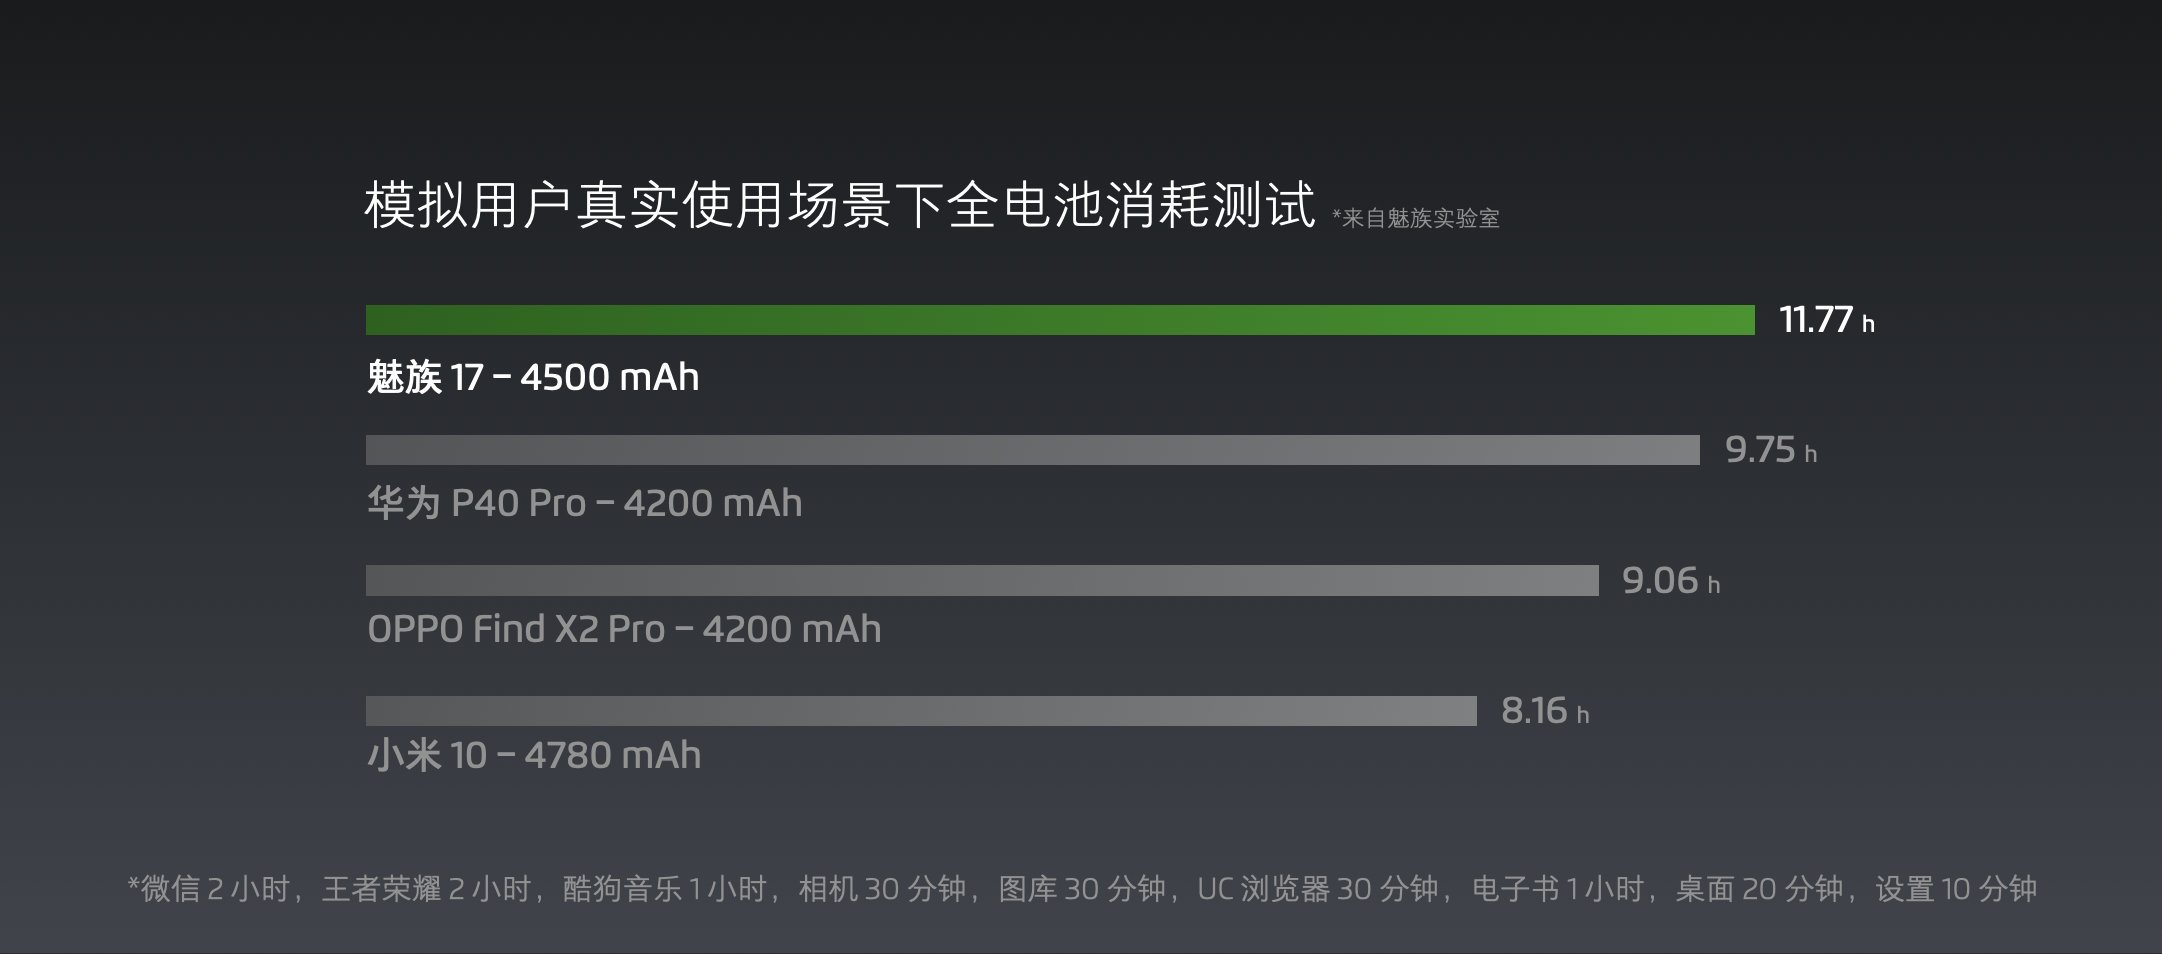 تحقق Meizu 17 11.77 ساعة في اختبار التحمل الداخلي للبطارية 77